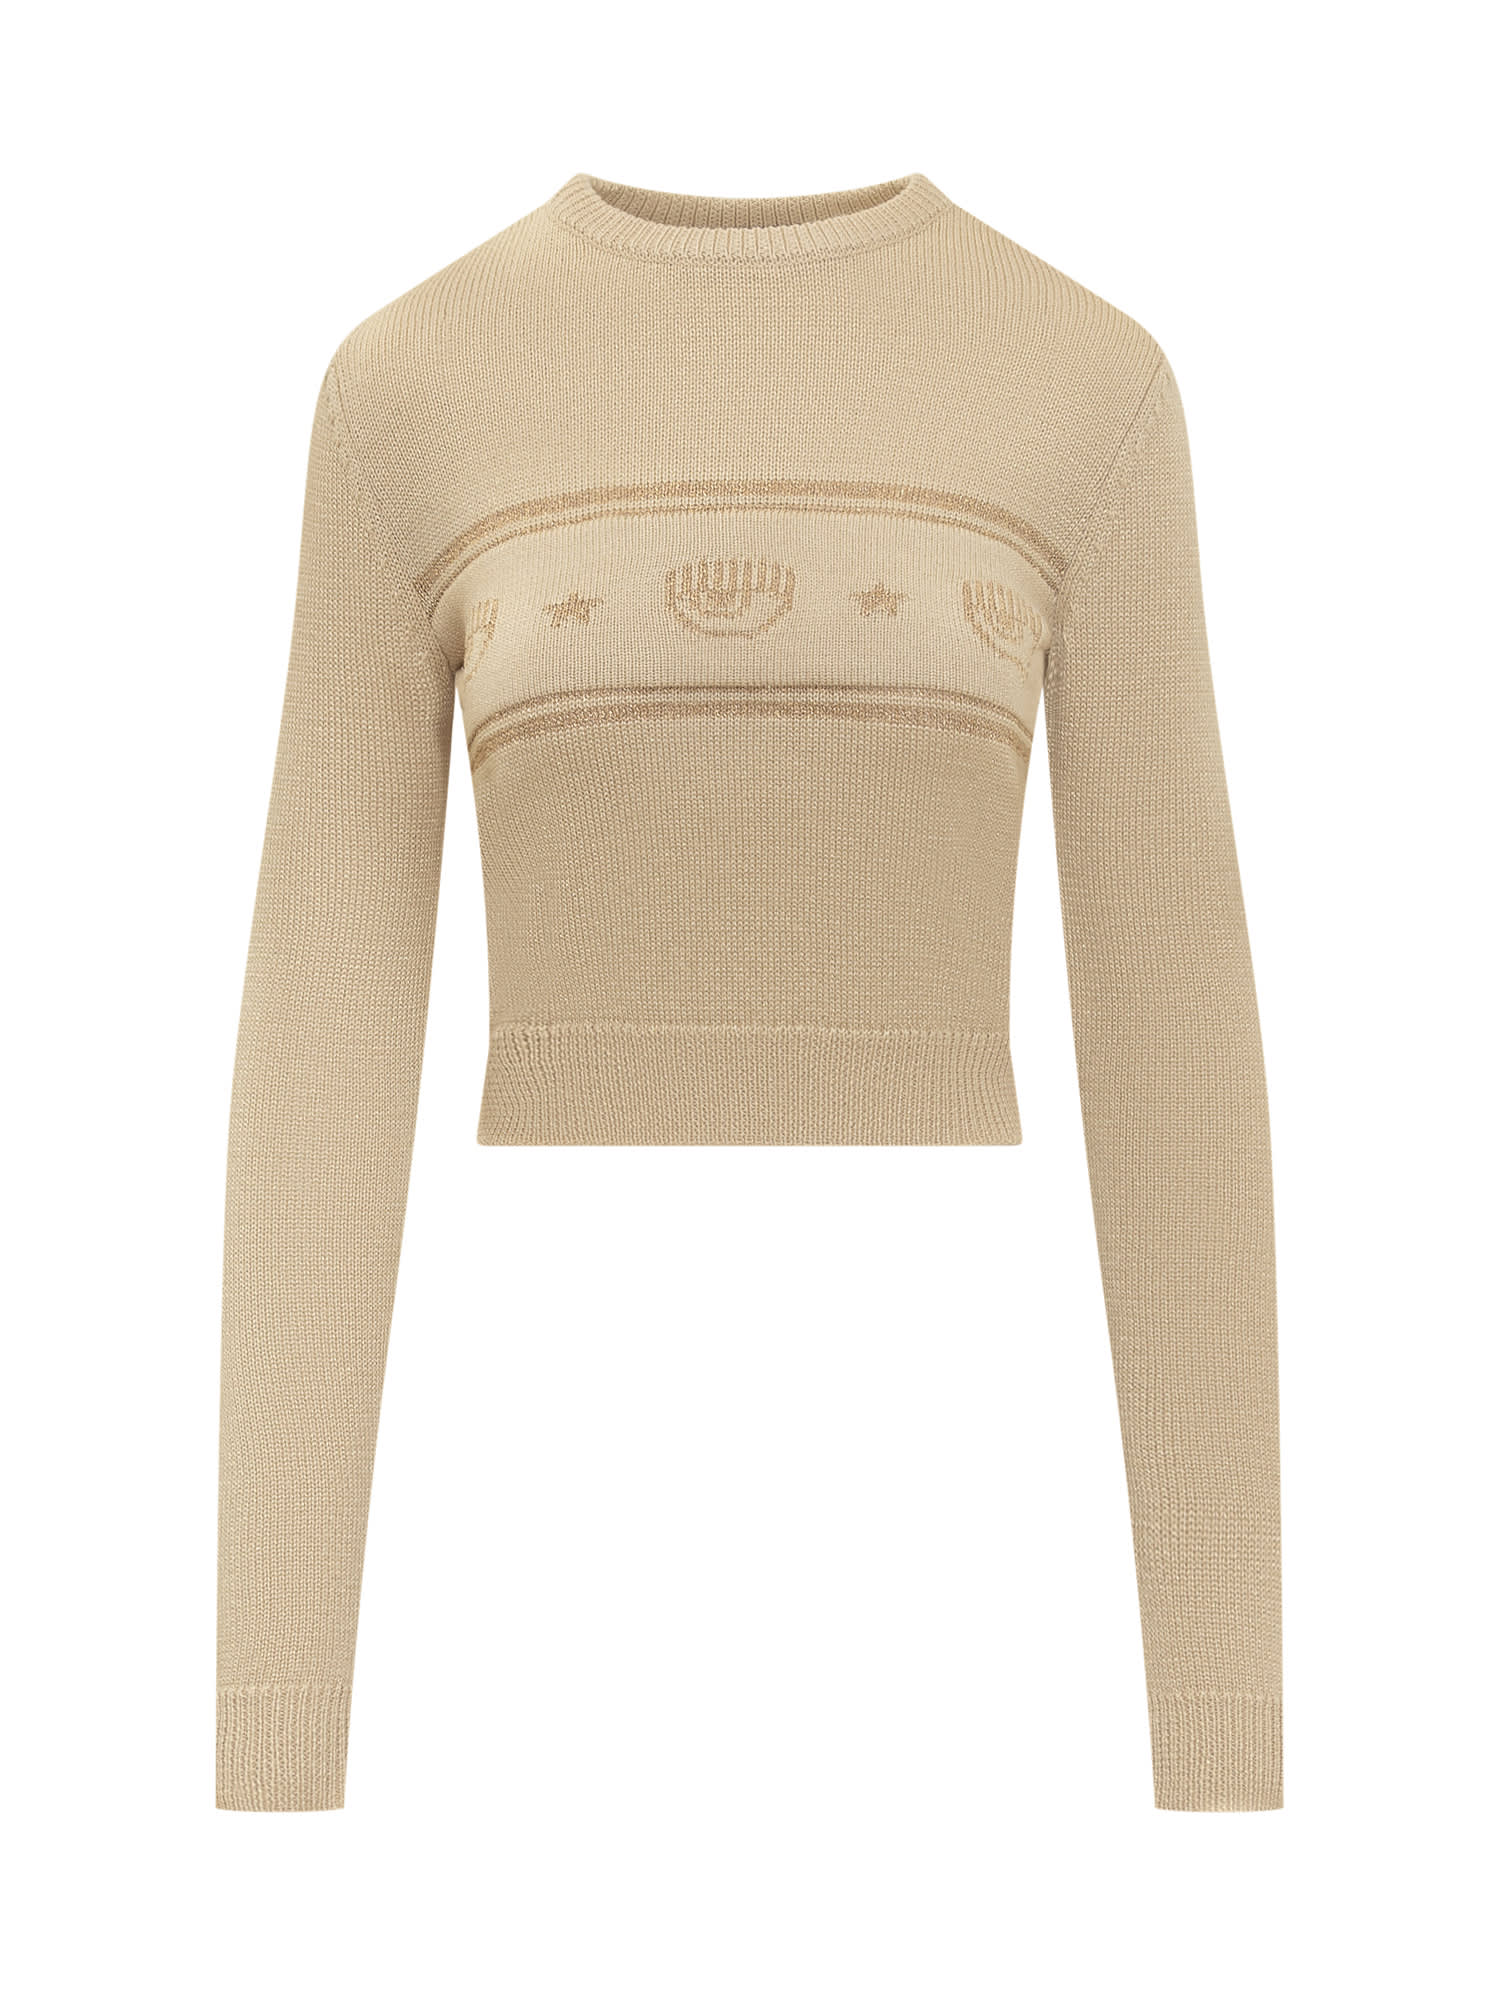 Chiara Ferragni Logomania Sweater In Oro